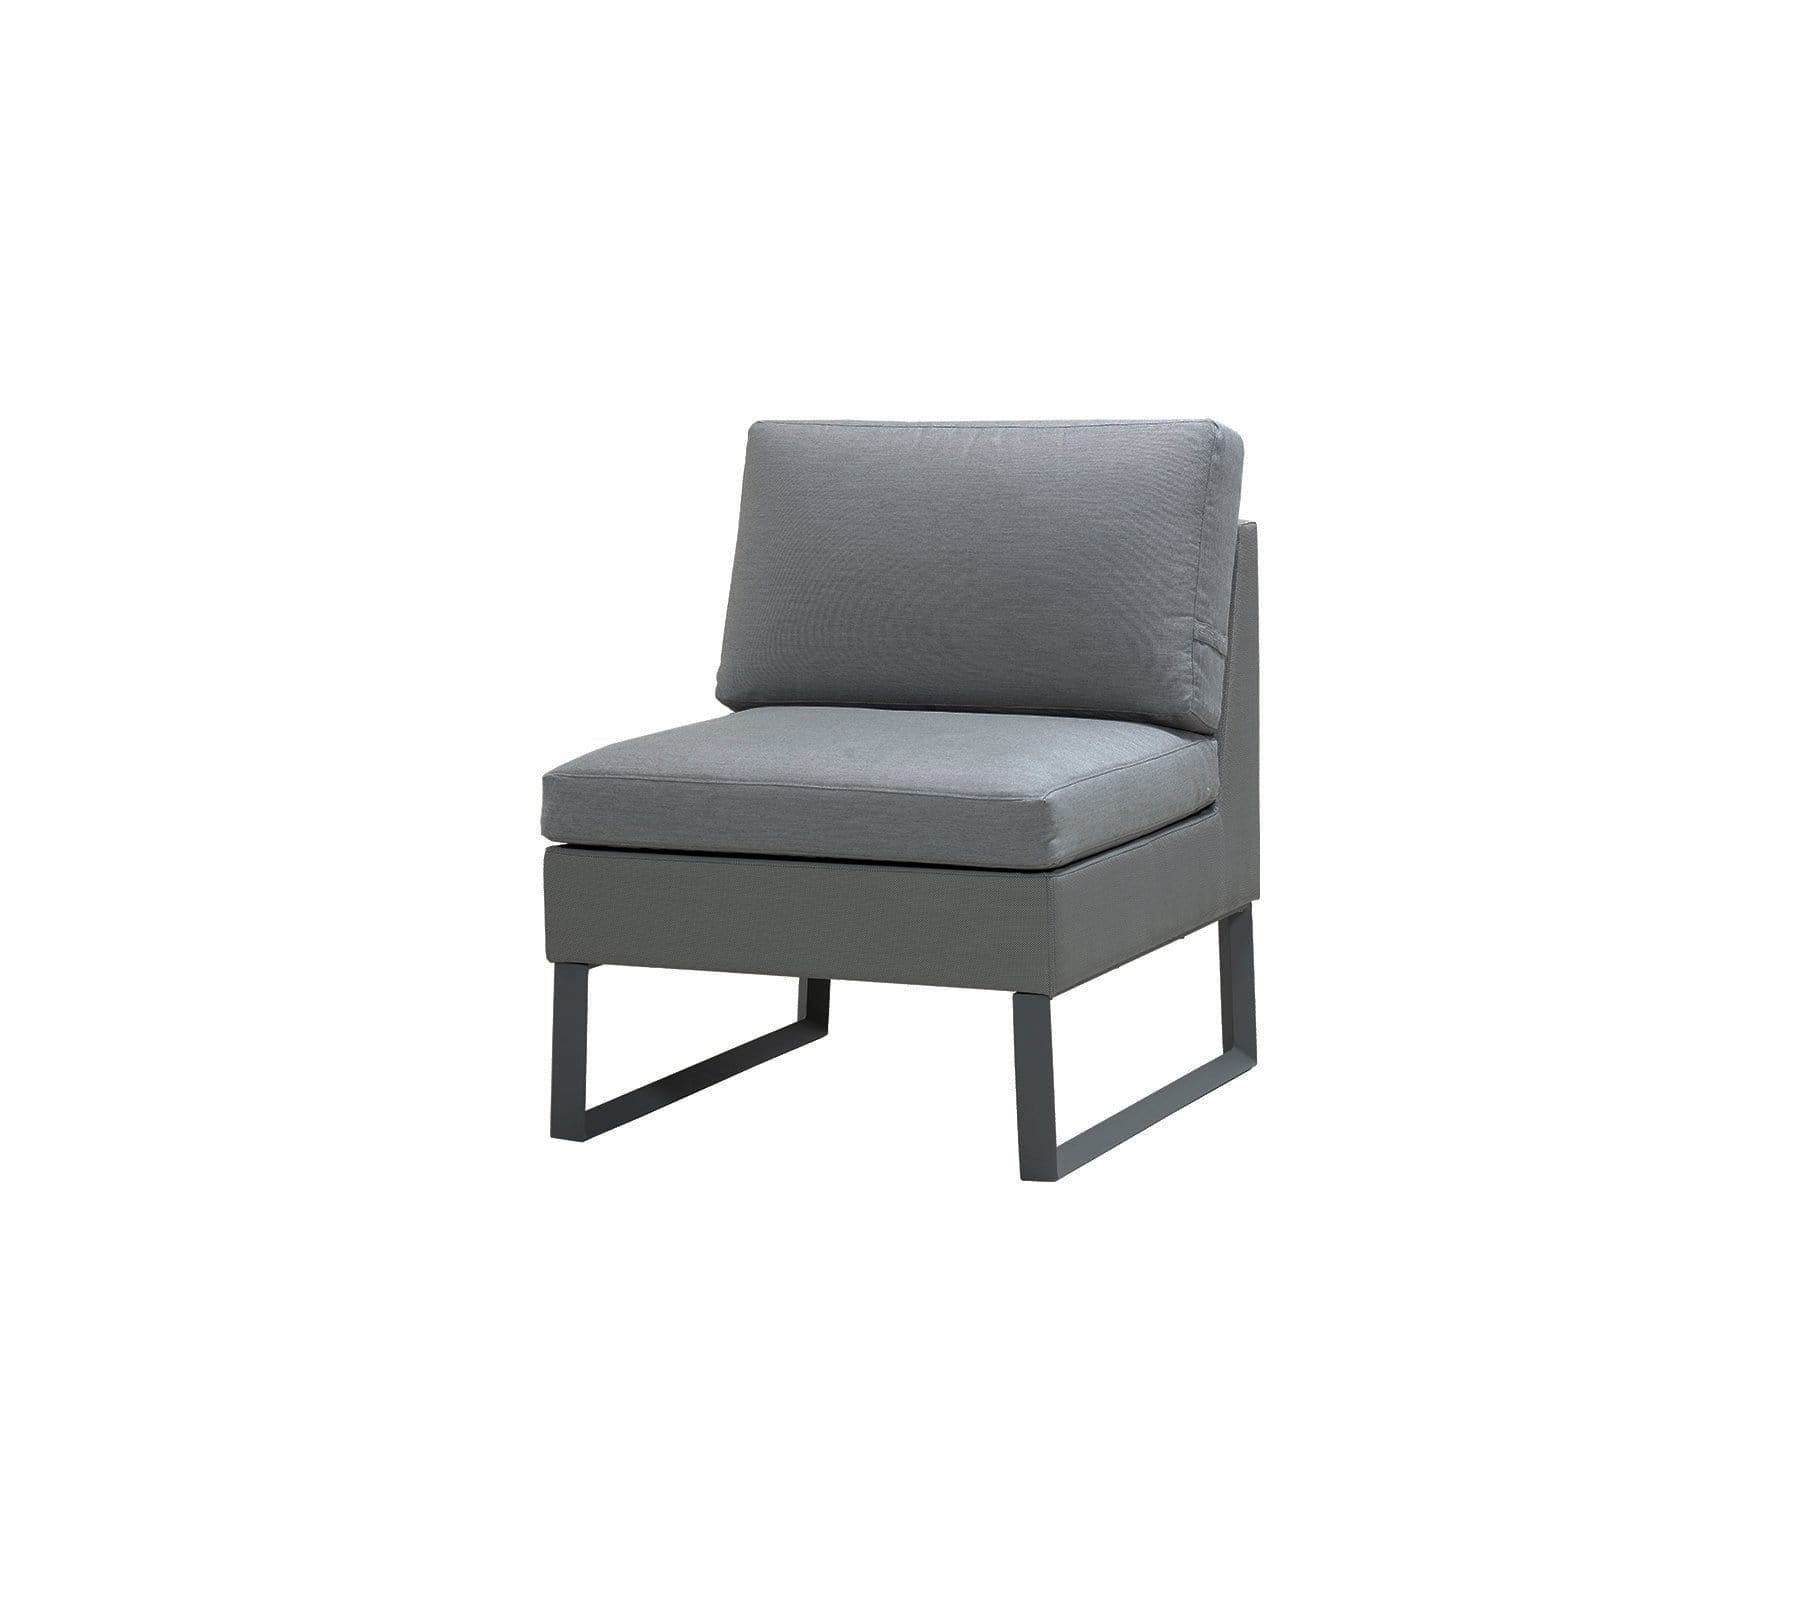 Boxhill's Flex Single Seater Sofa Module in white background